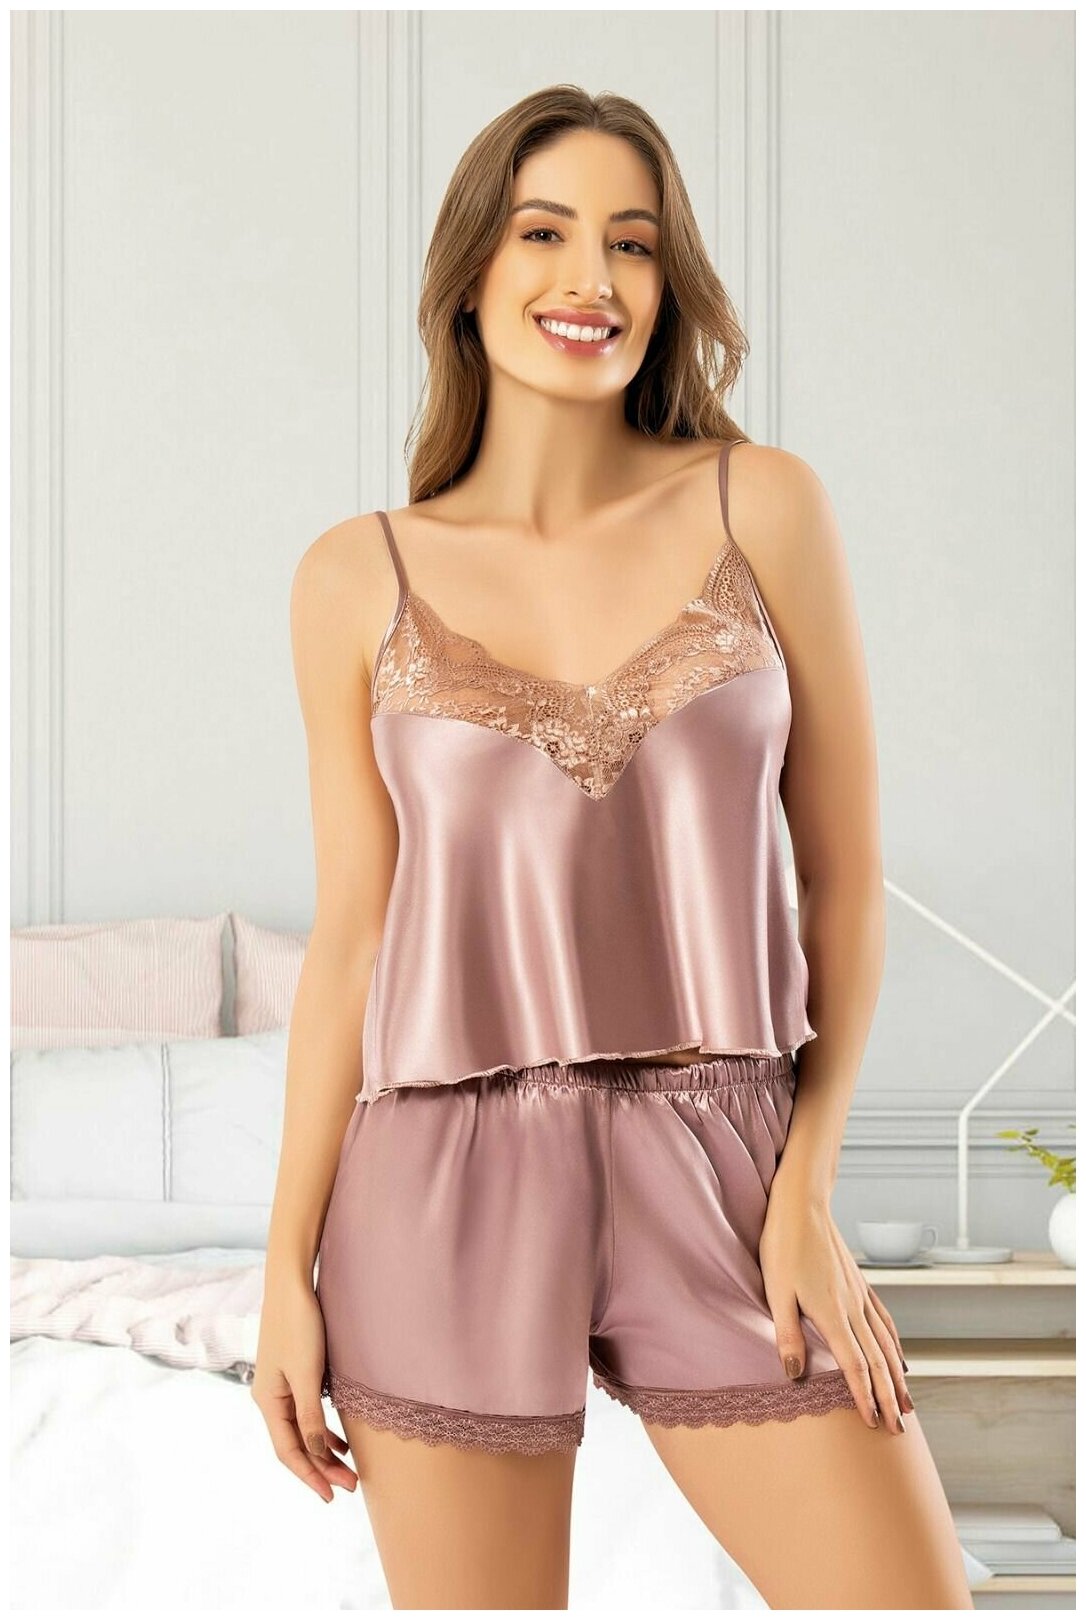 Пижама miss LARIS lingerie, размер 44, розовый, серебряный - фотография № 1